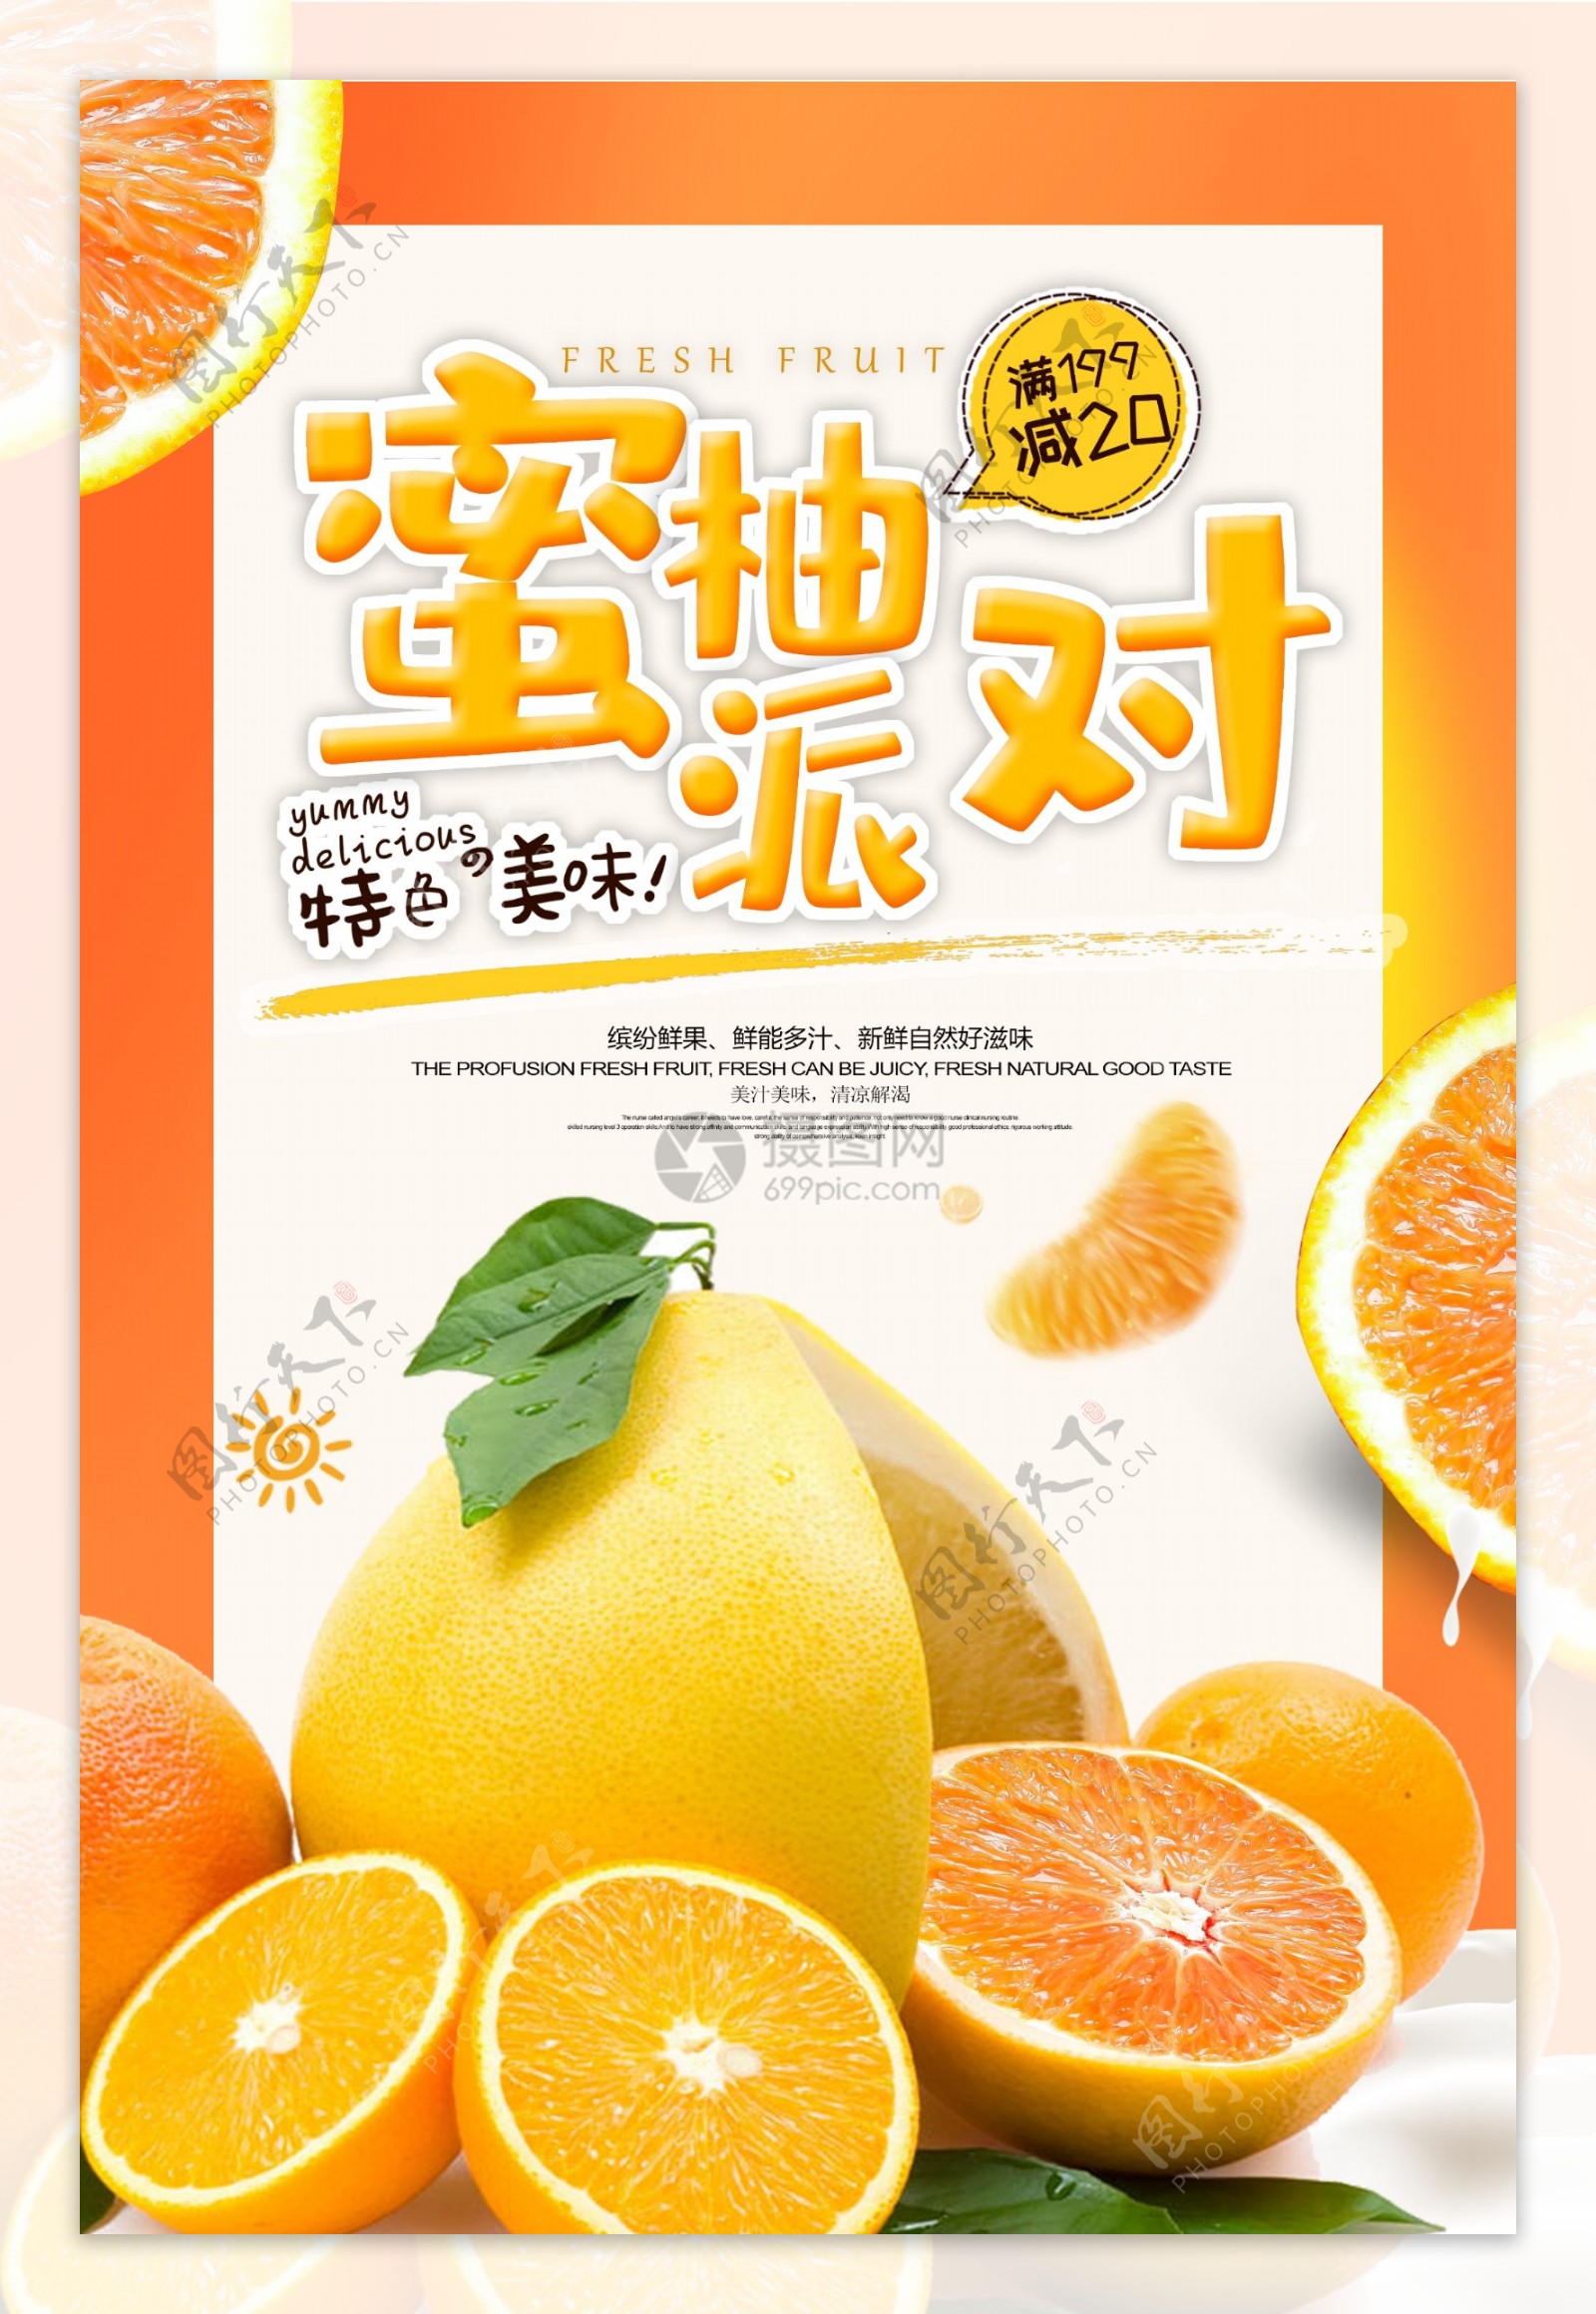 当季果蔬柚子促销海报